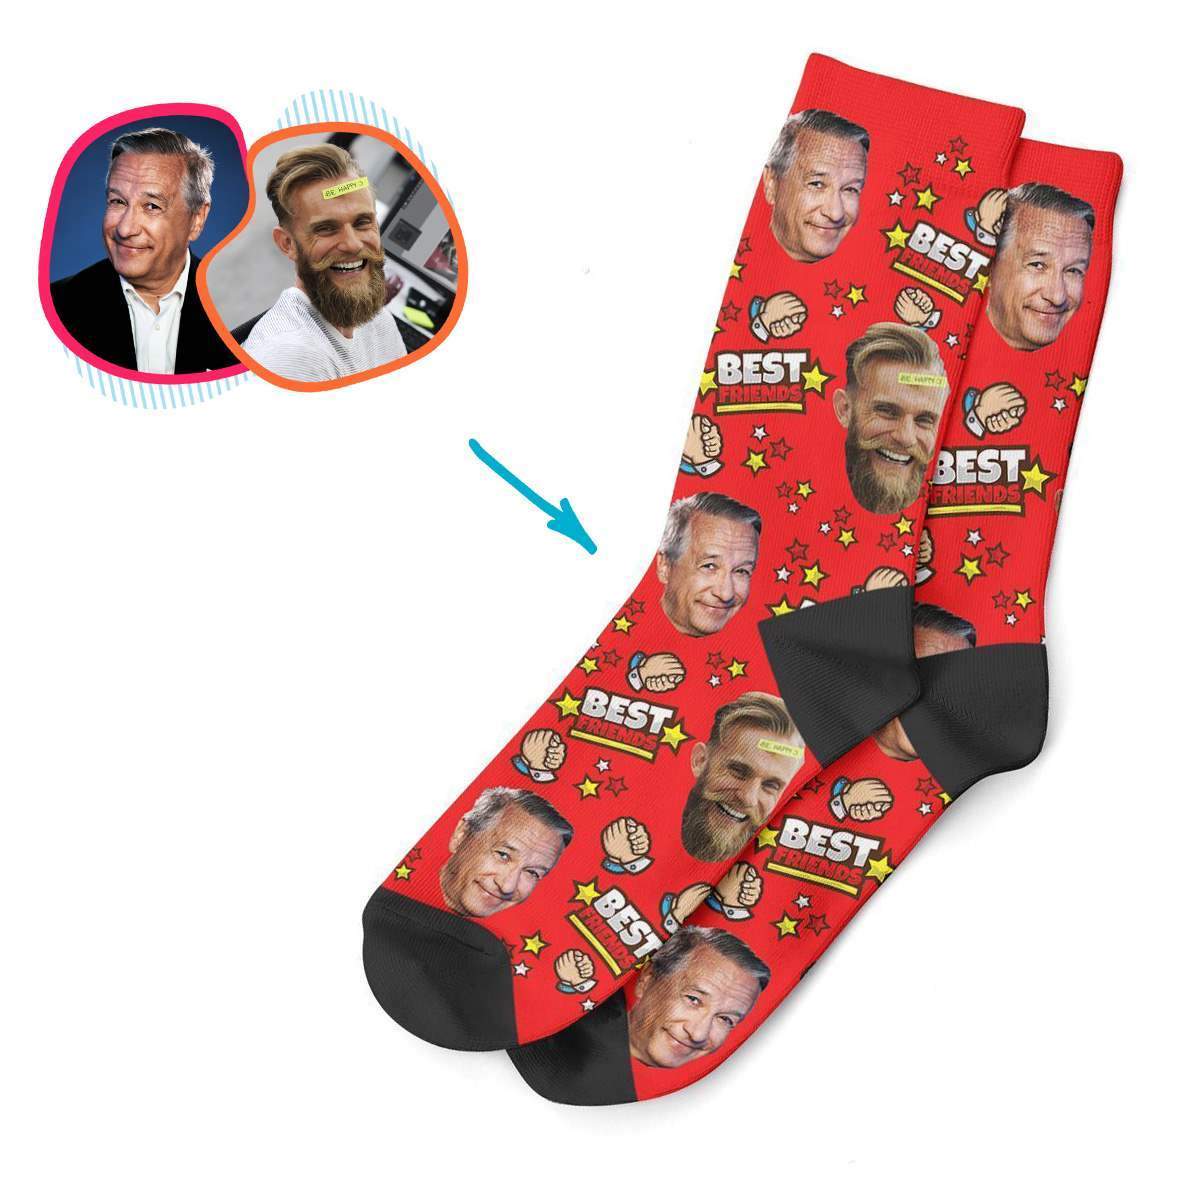 Best Friends Personalized Socks